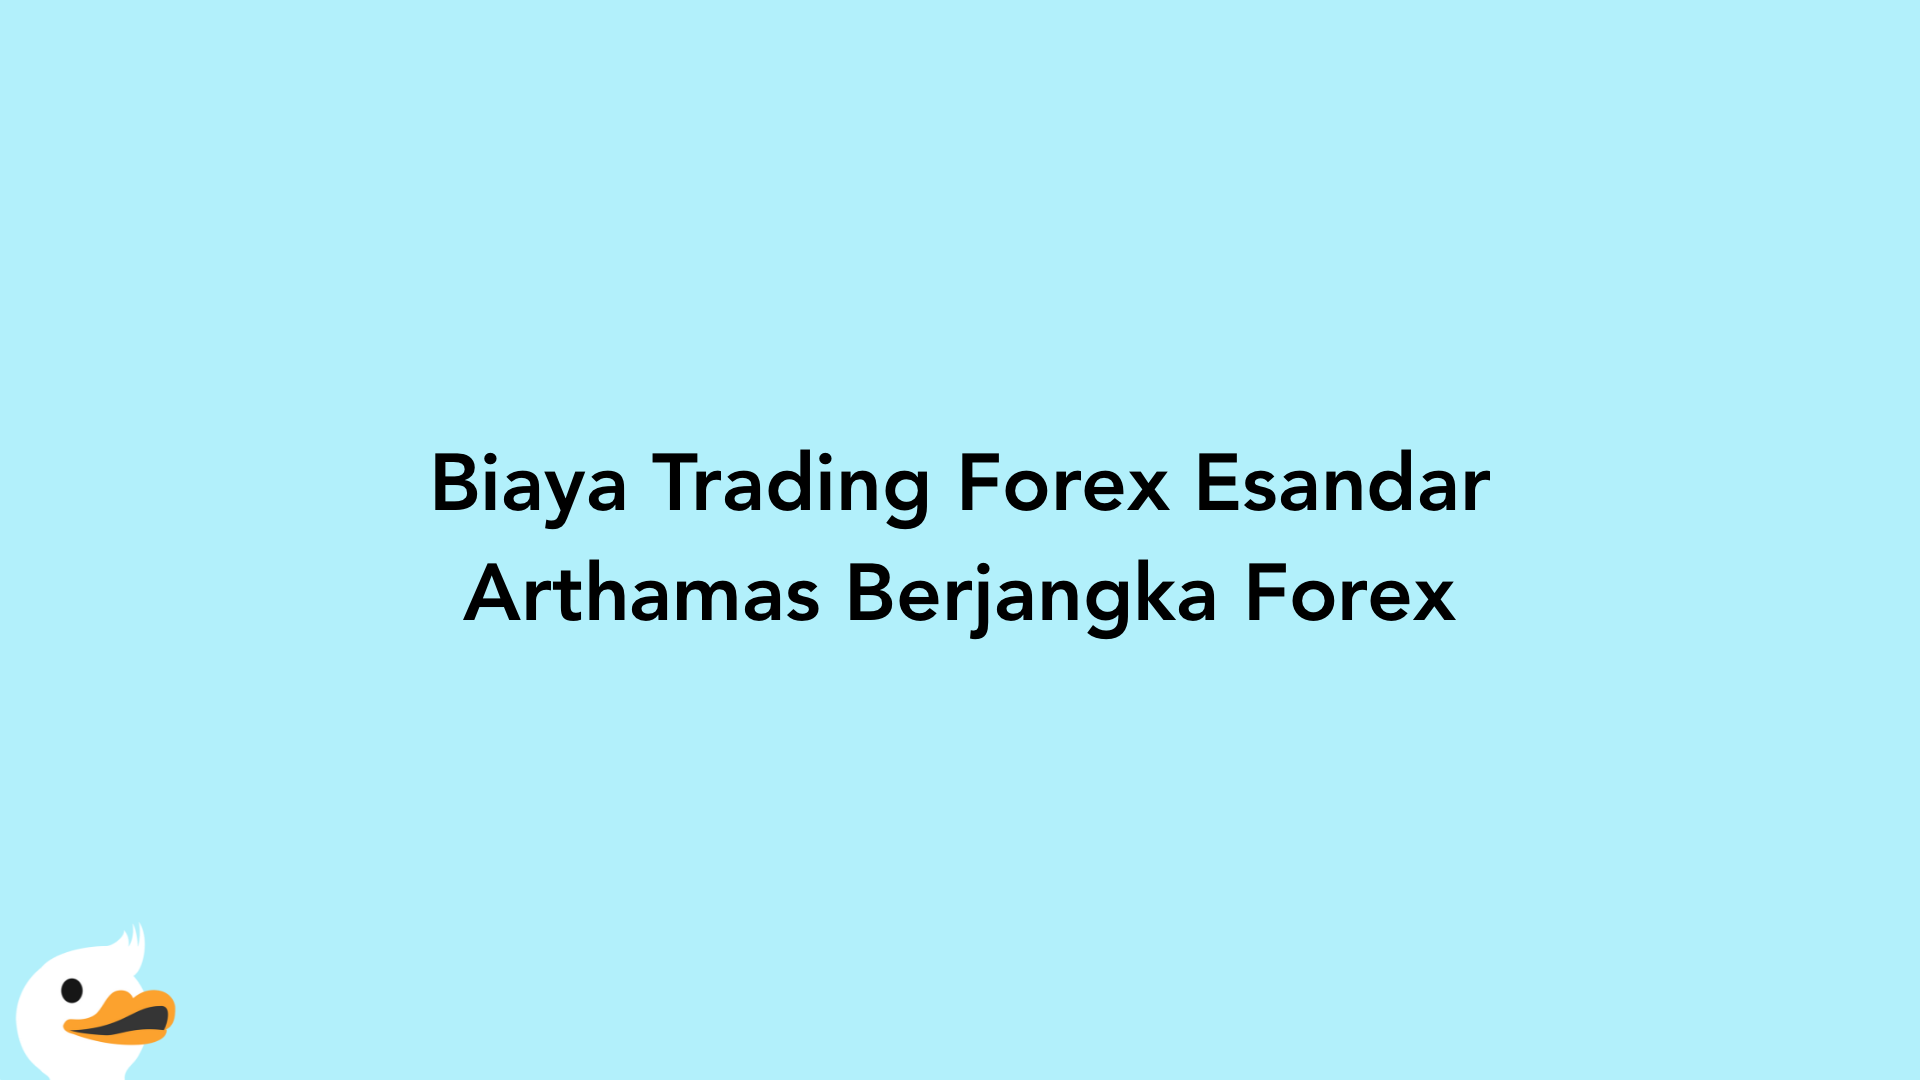 Biaya Trading Forex Esandar Arthamas Berjangka Forex